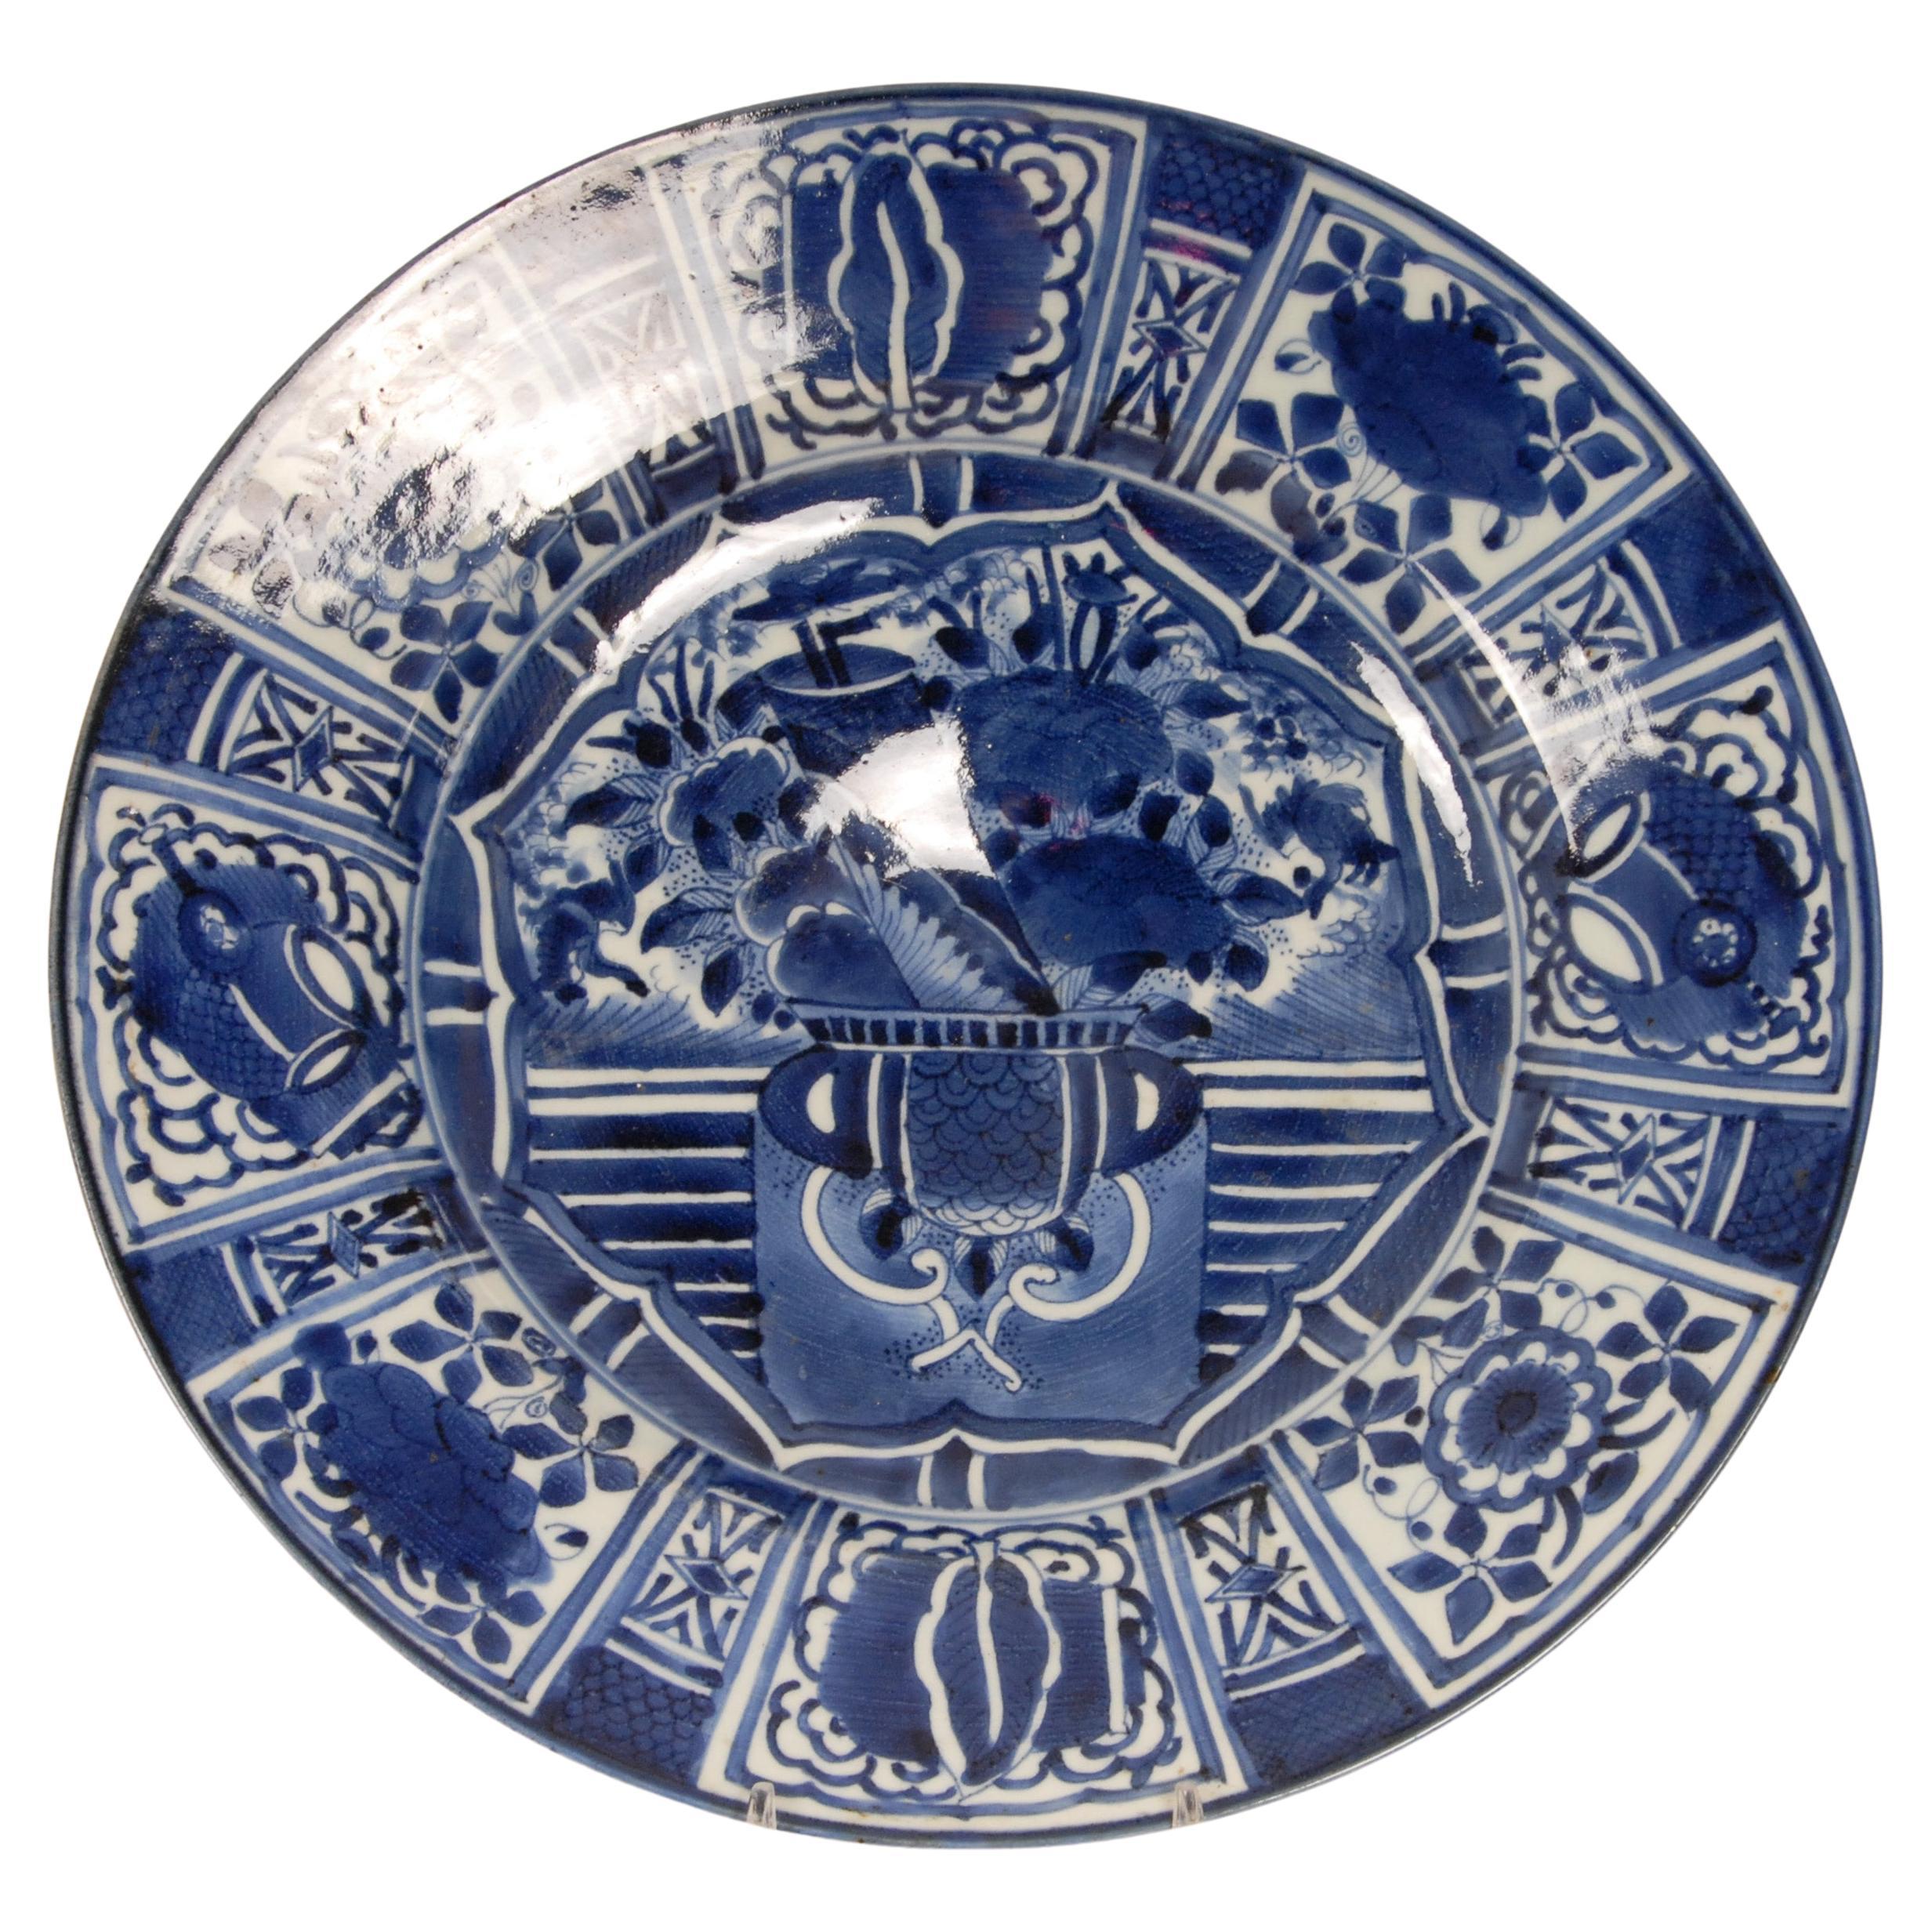 Assiette de présentation Arita du 17ème siècle en porcelaine bleue et blanche exportée de la période Ming Edo